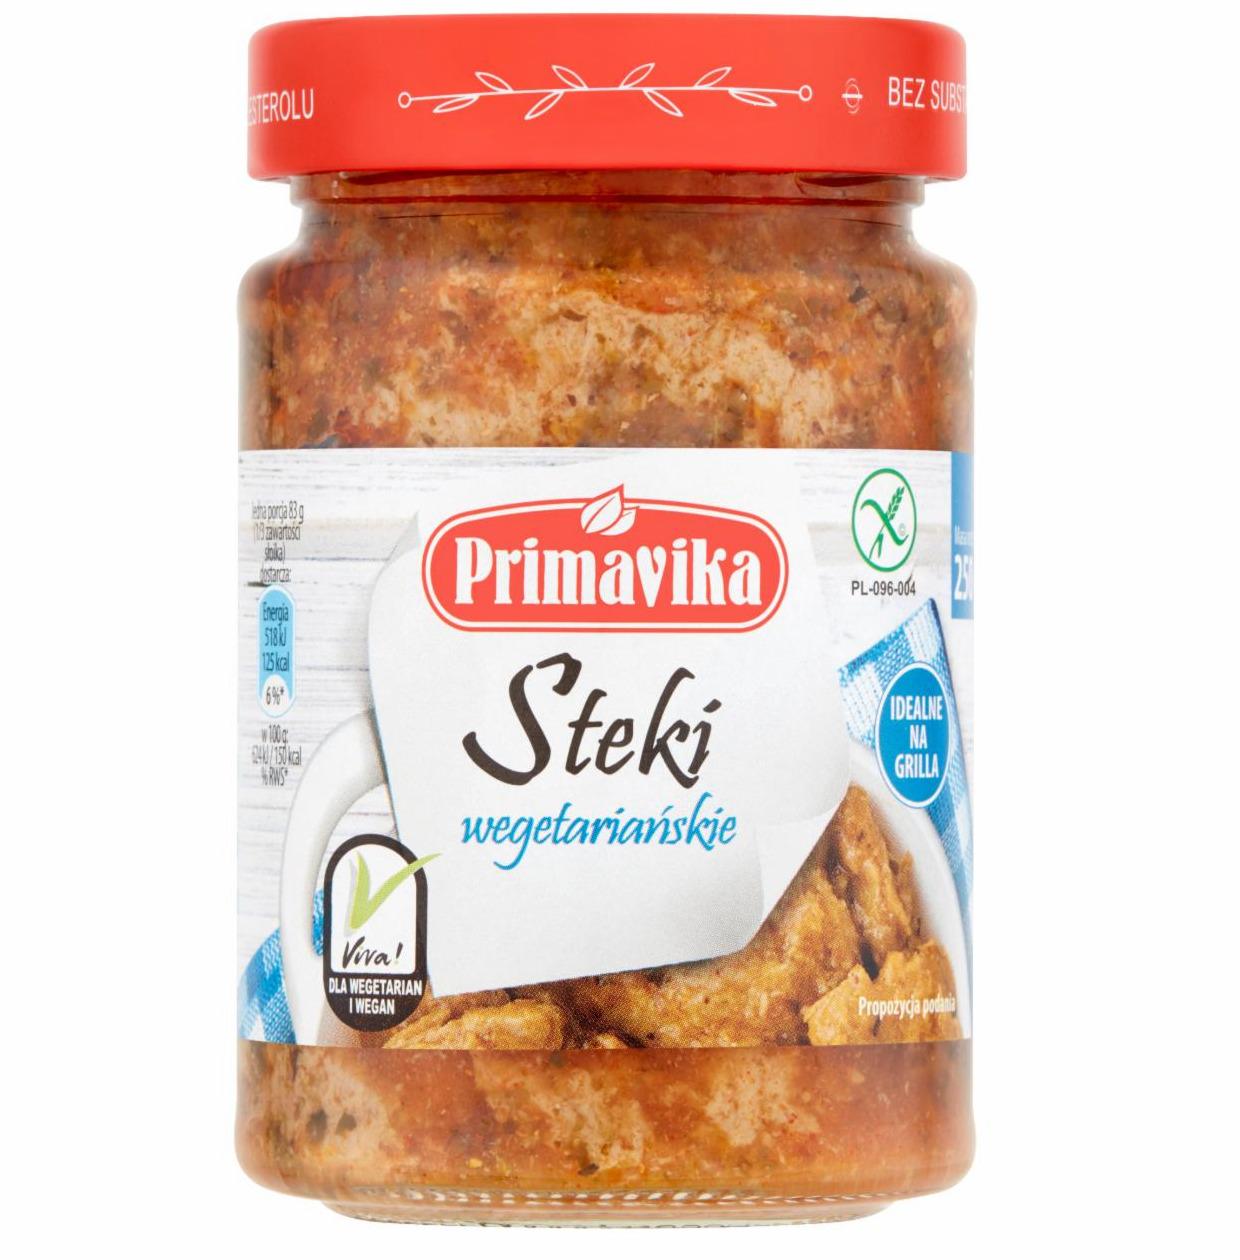 Zdjęcia - Steki wegetariańskie Primavika